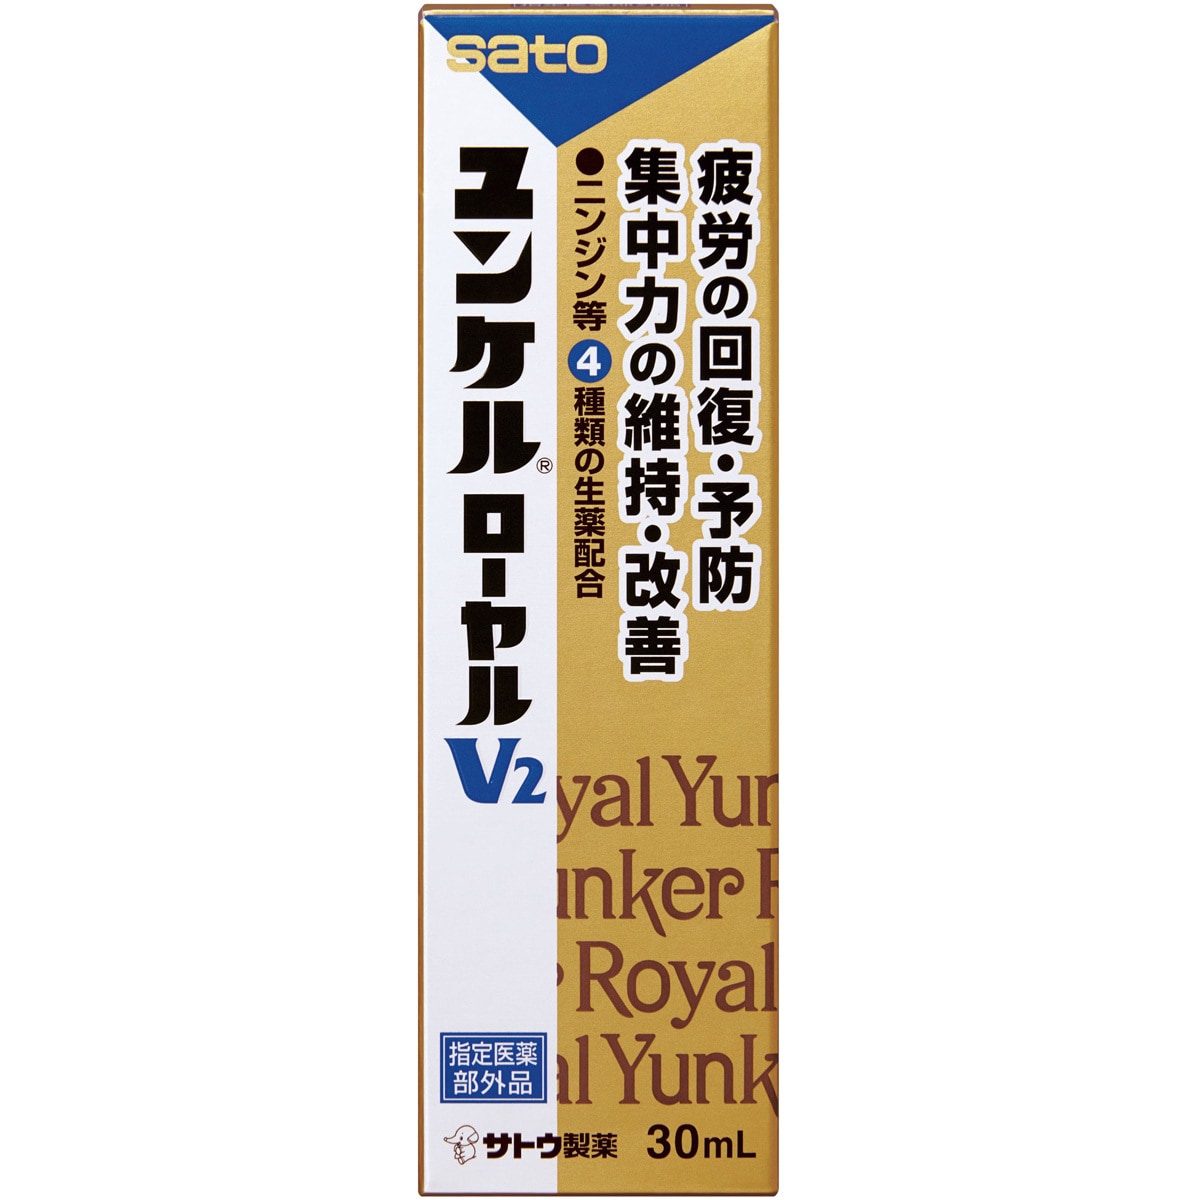 【最安値挑戦】佐藤製薬 ユンケルローヤルV2 40本セットサトウセイヤク